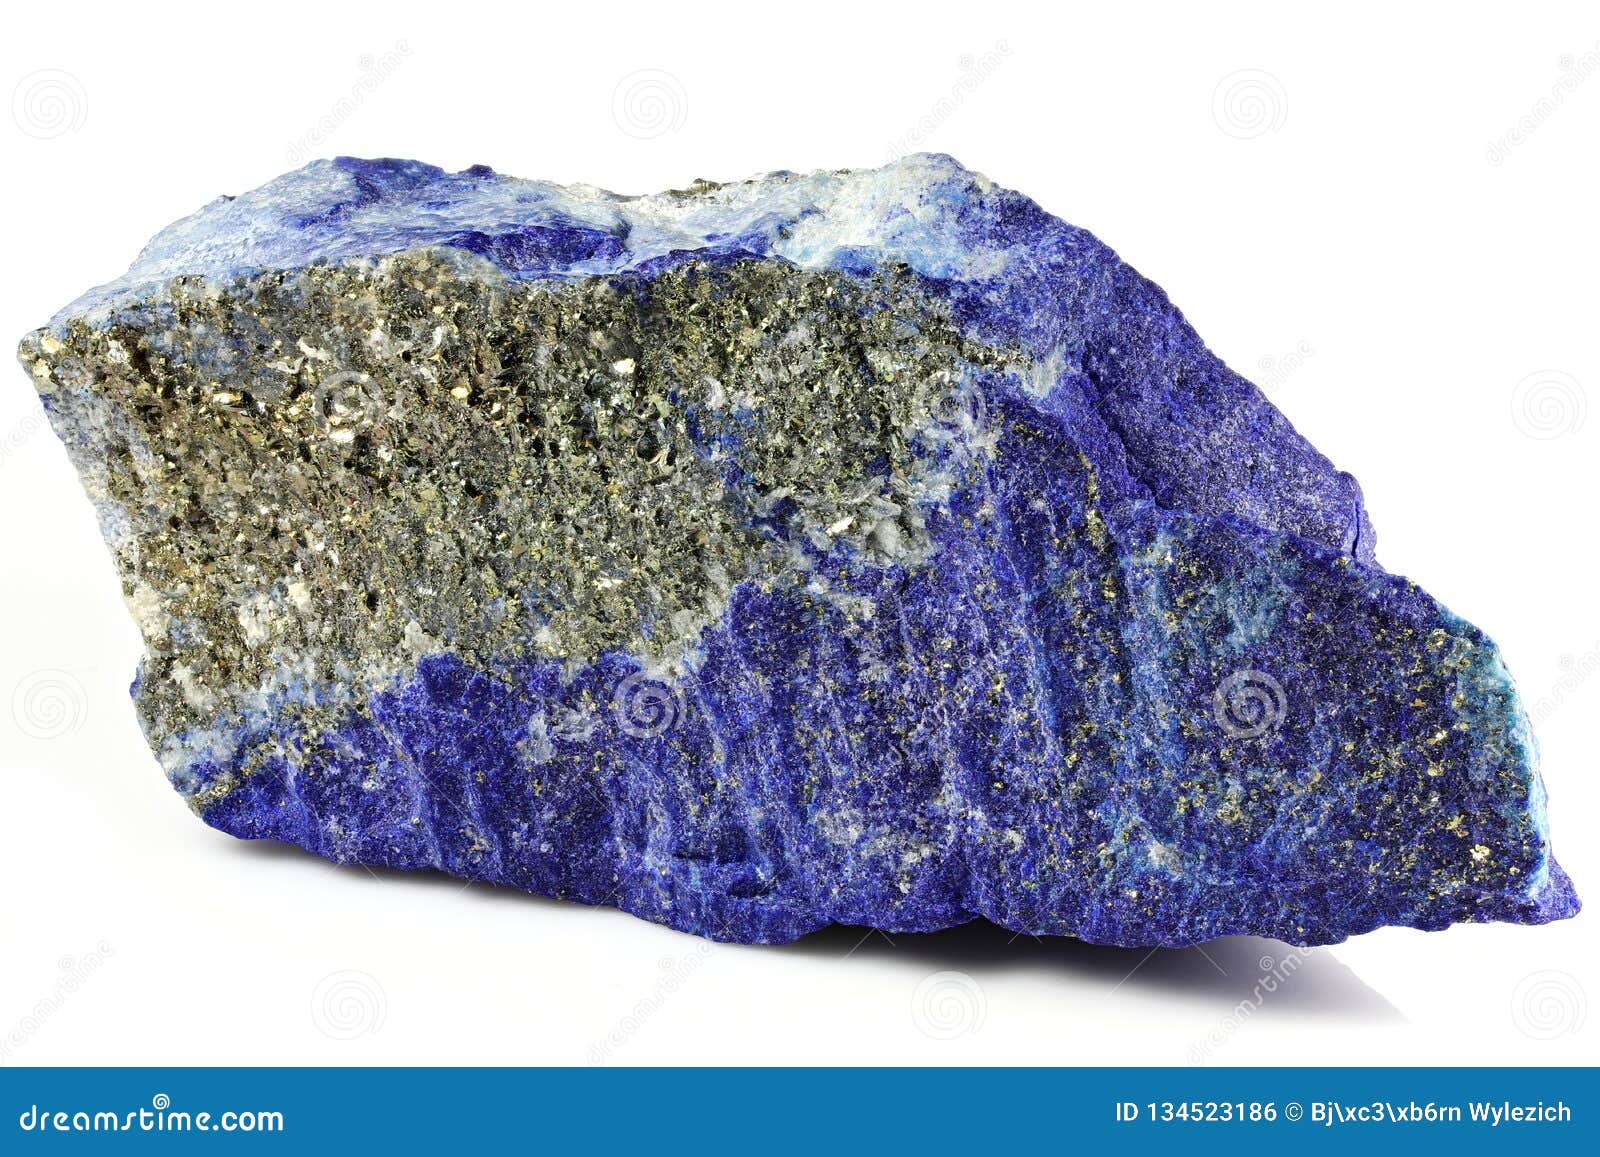 madani lapis lazuli